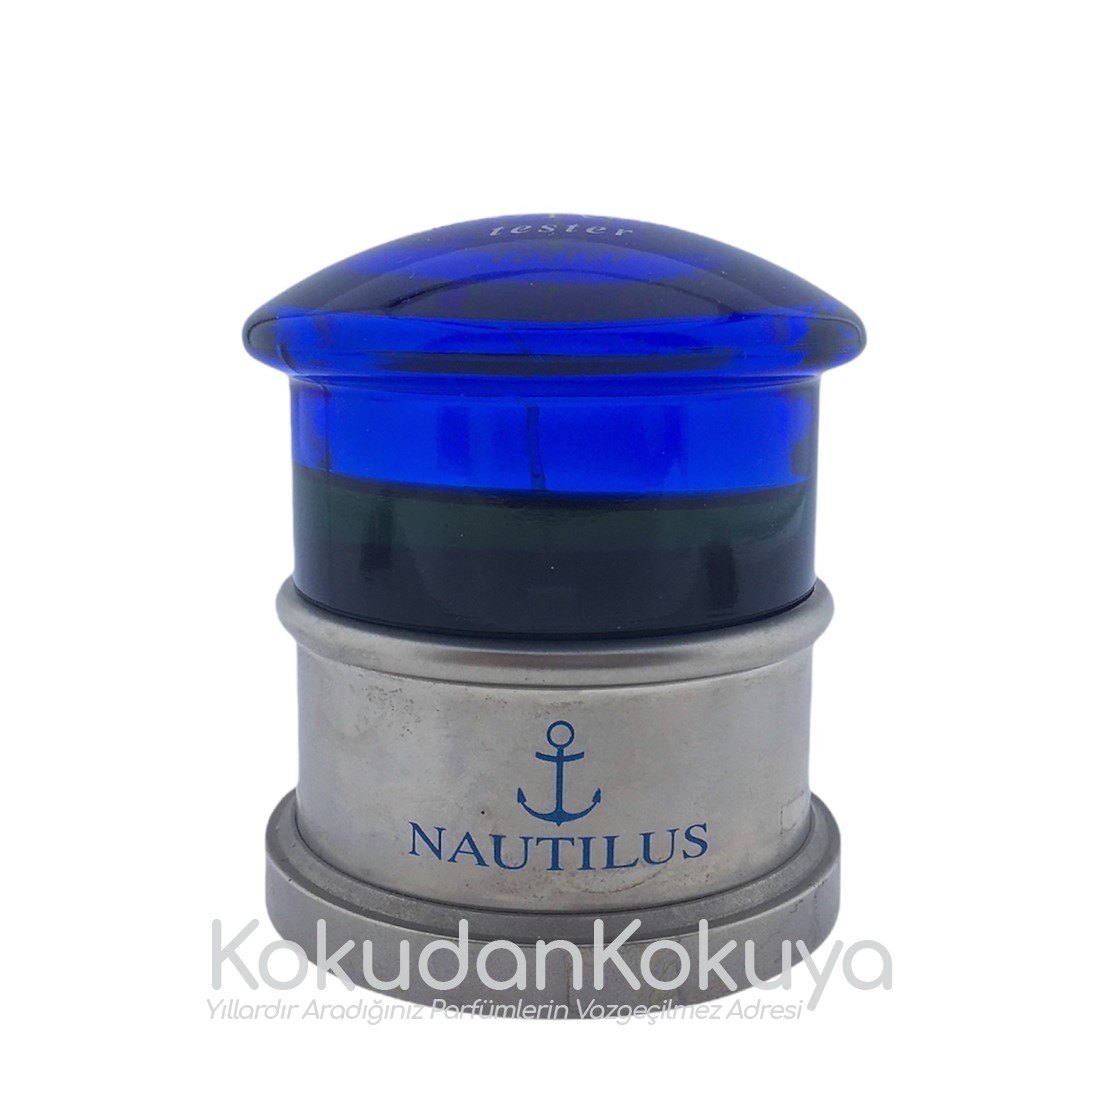 NAUTILUS Aqua Nautilus (Vintage) Parfüm Erkek Eau De Toilette (EDT) Sprey 